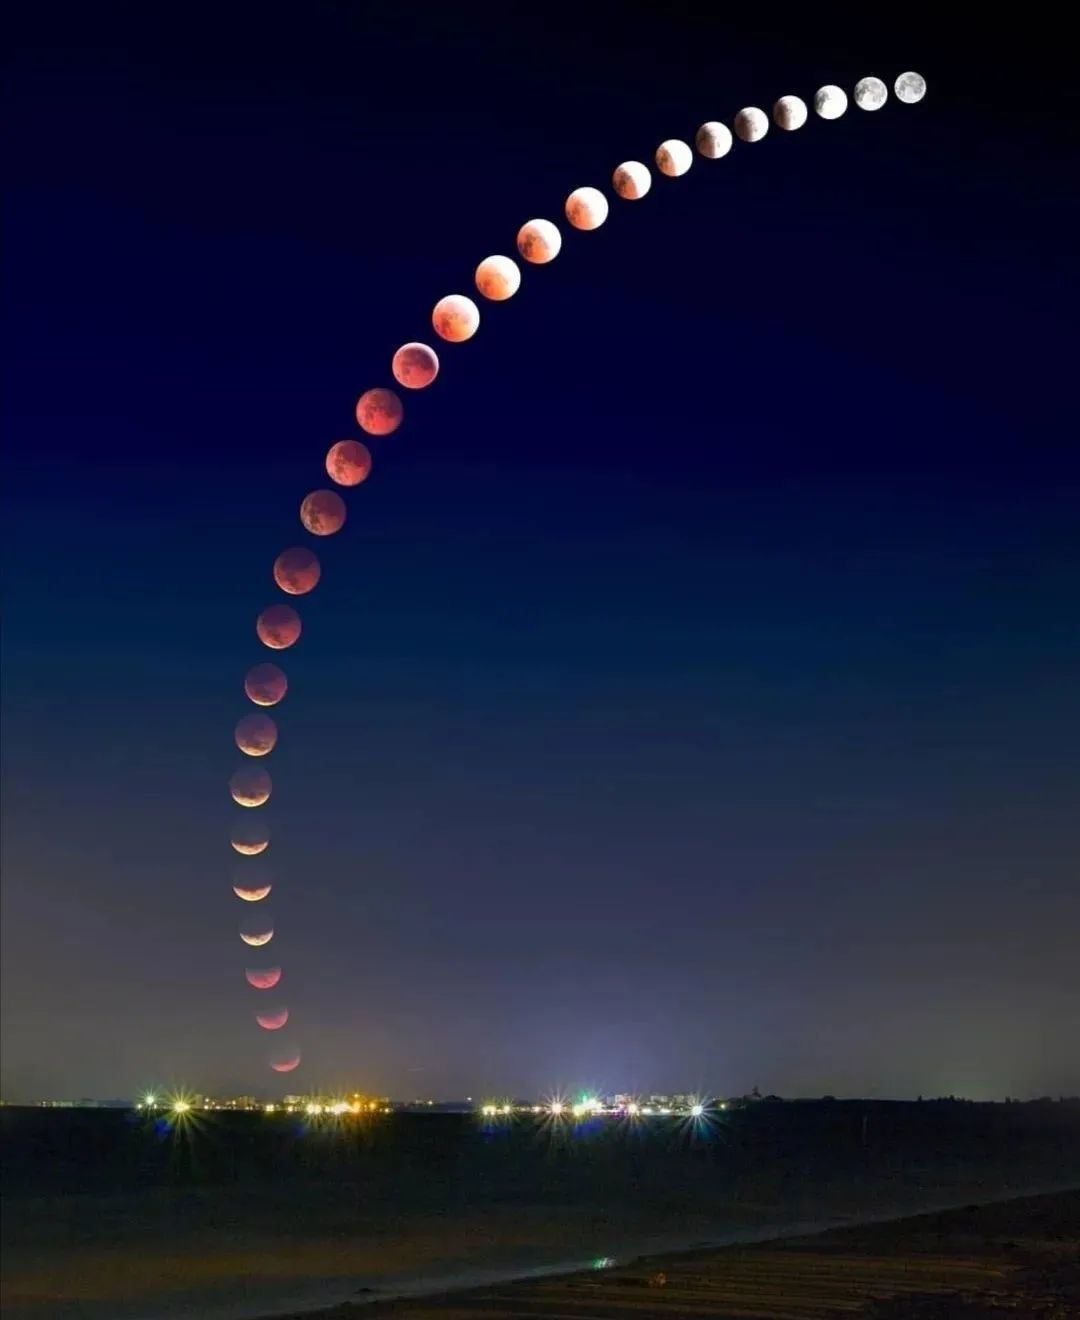 كيف يبدو القمر الوردي في السماء